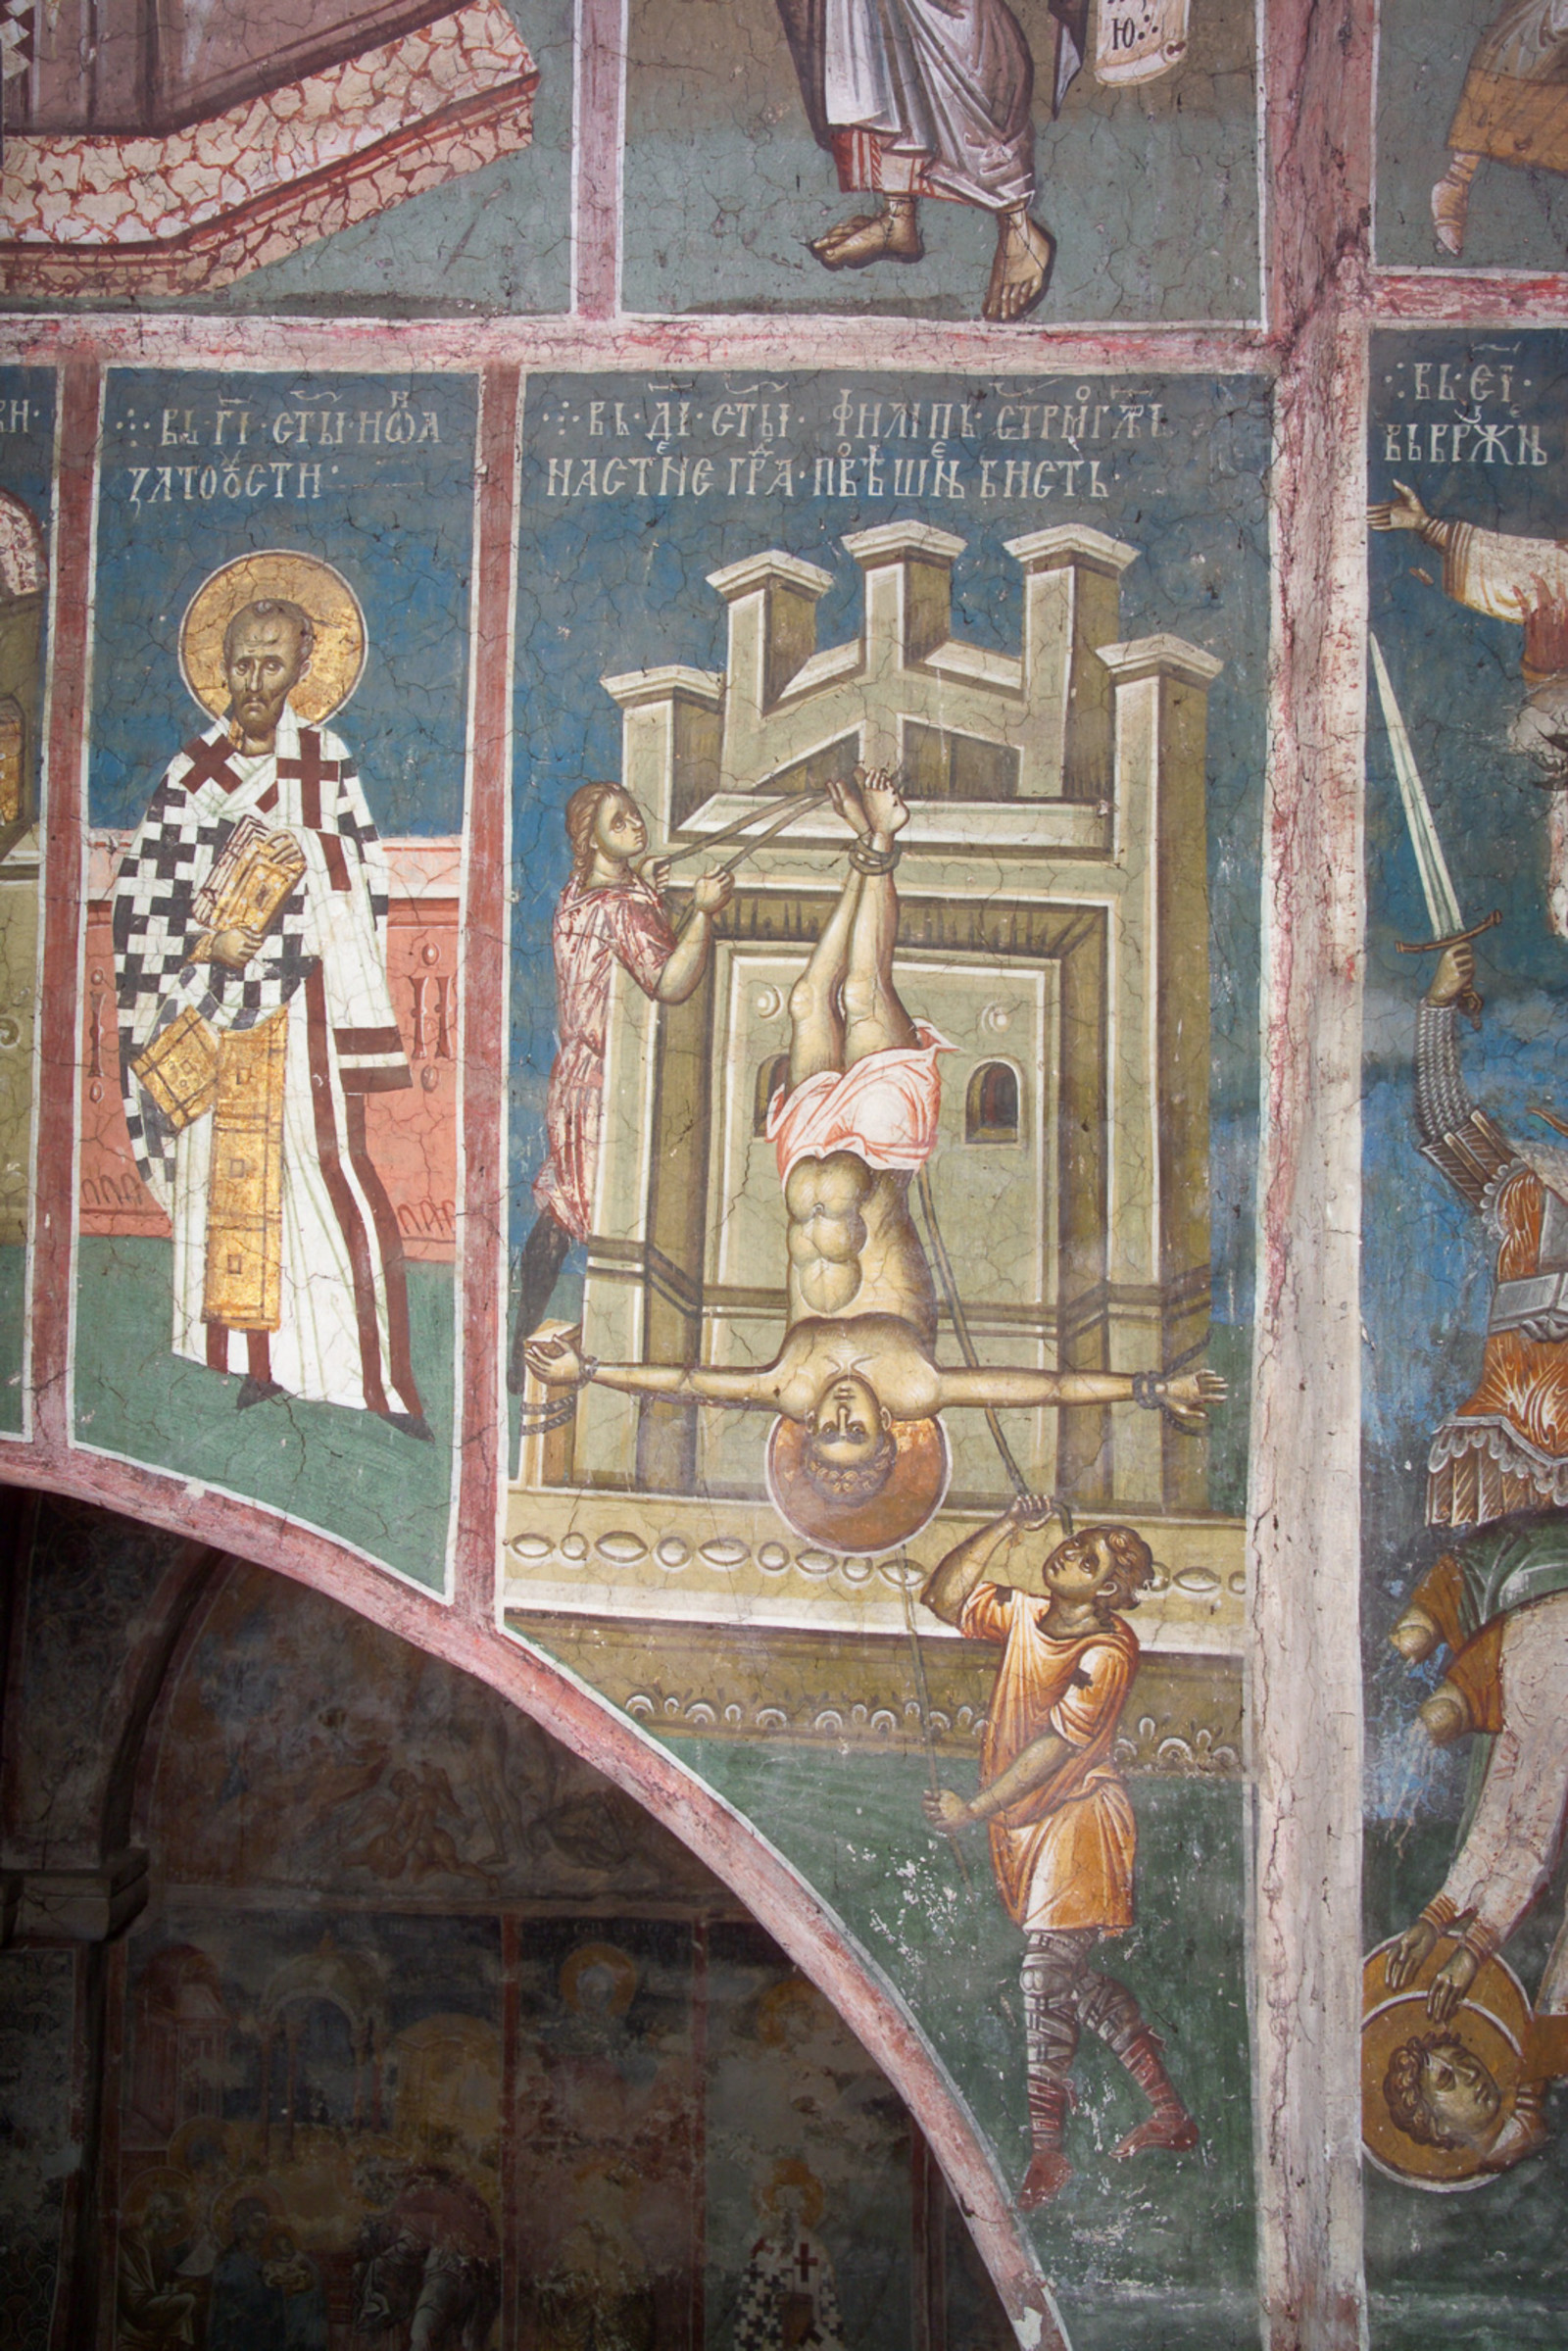 7II-22,23 November 13 & 14 - St. John Chrysostom (figure) and St. Philip (scene)